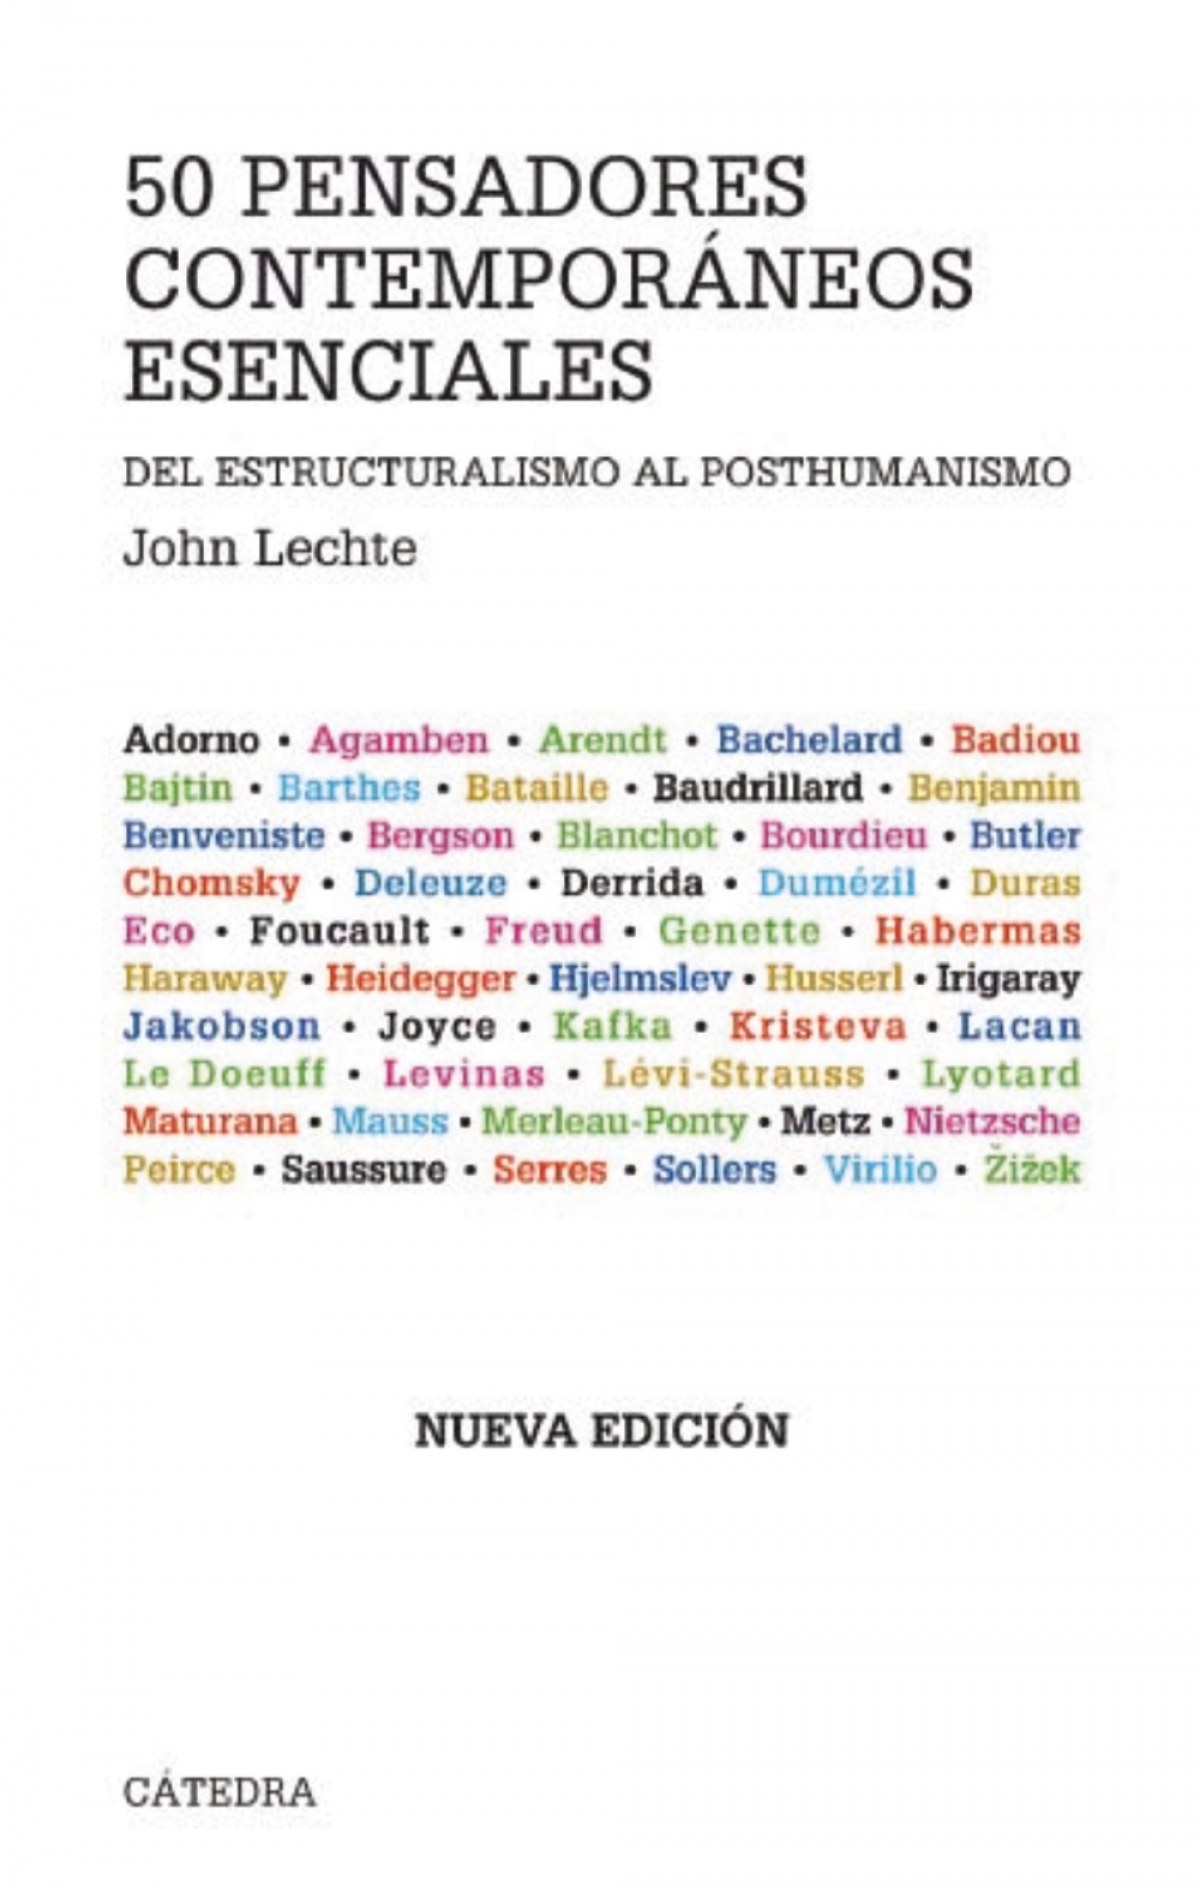 Cincuenta pensadores contemporáneos esenciales - Lechte, John